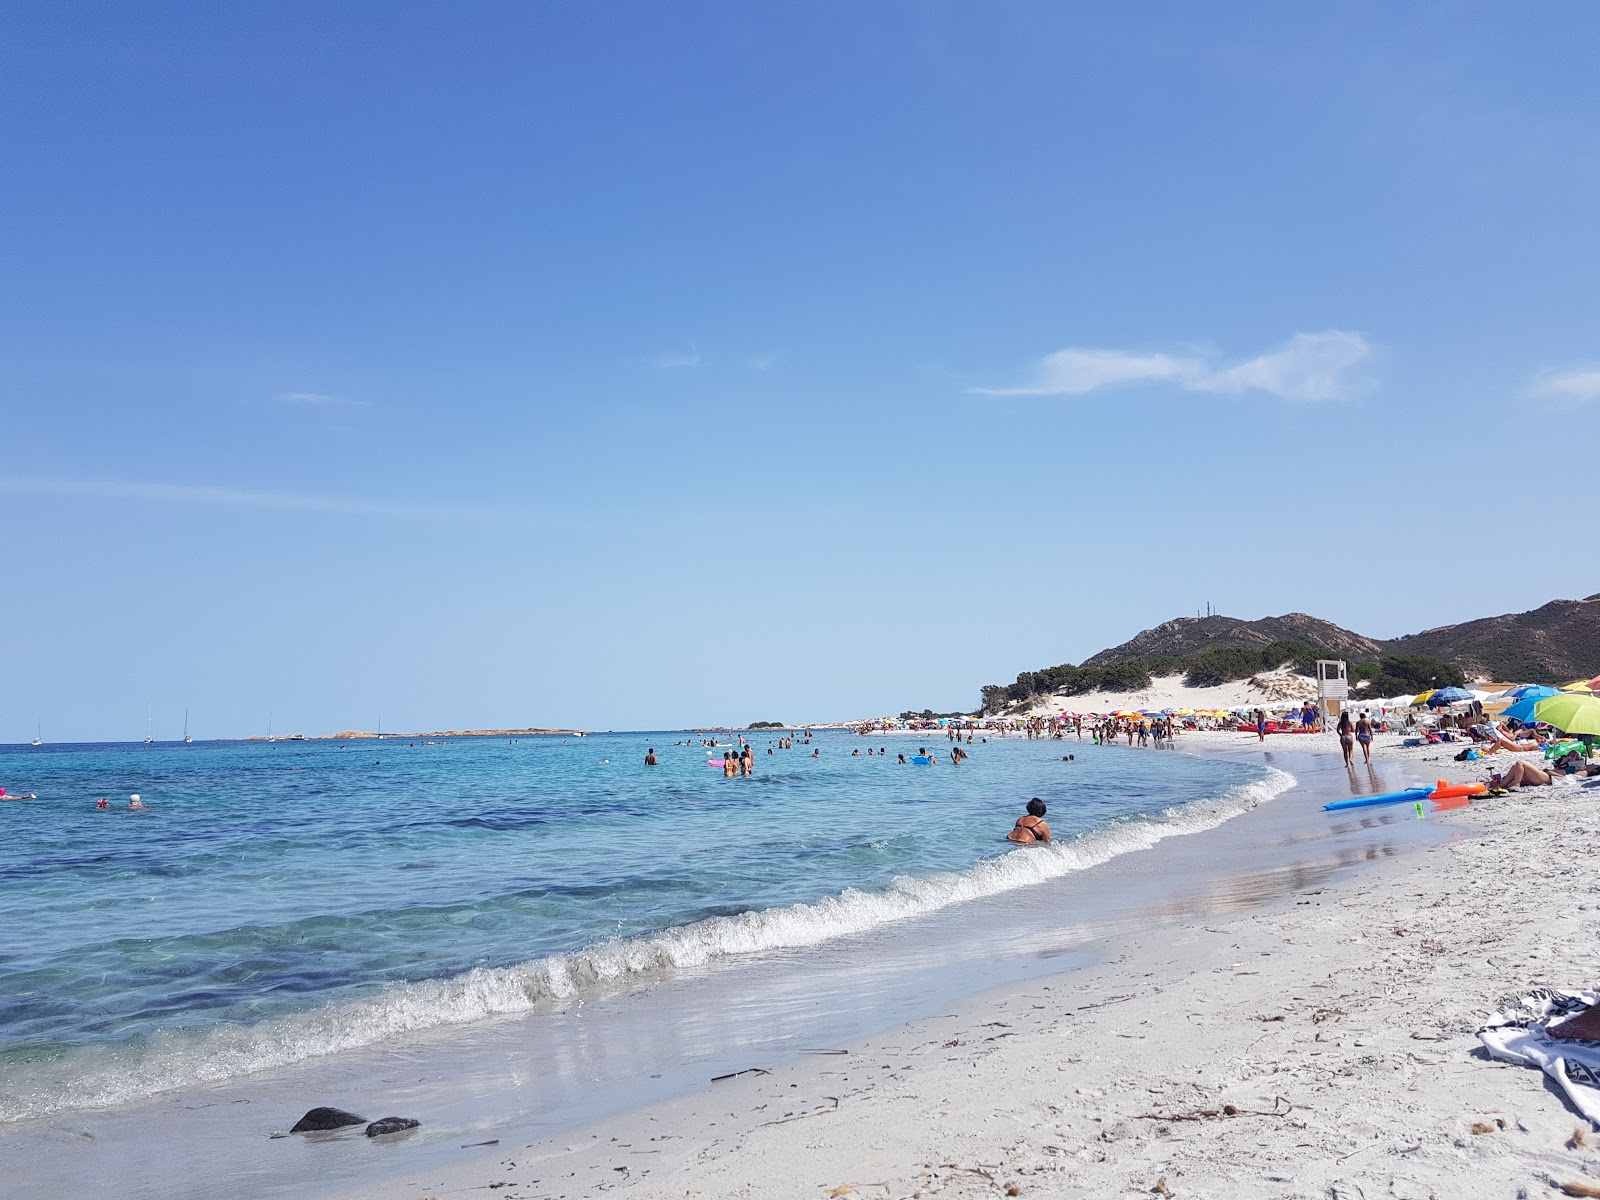 Foto av Spiaggia Di Capo Comino med lång rak strand